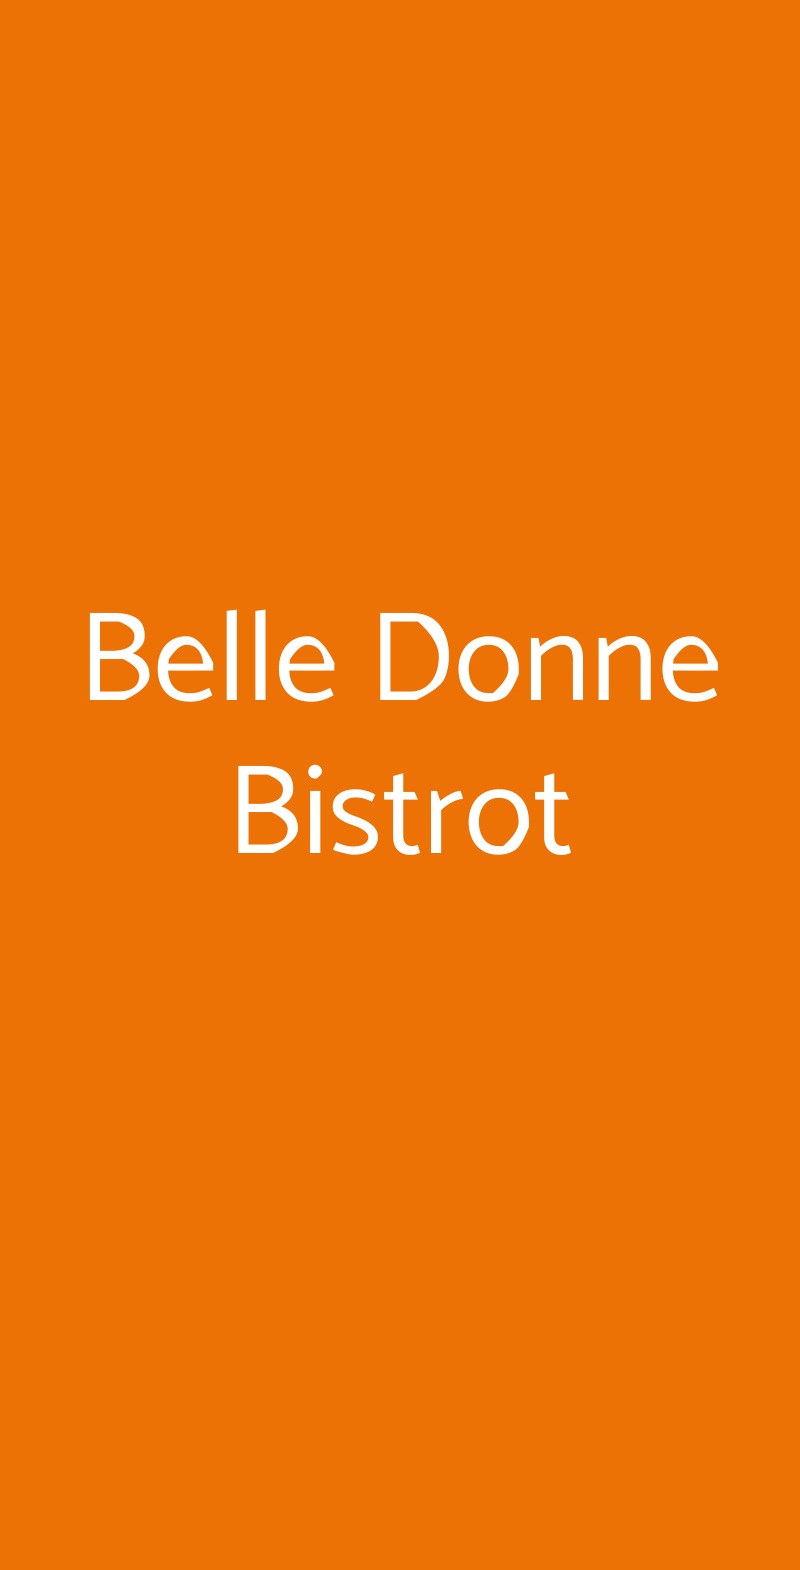 Belle Donne Bistrot Milano menù 1 pagina